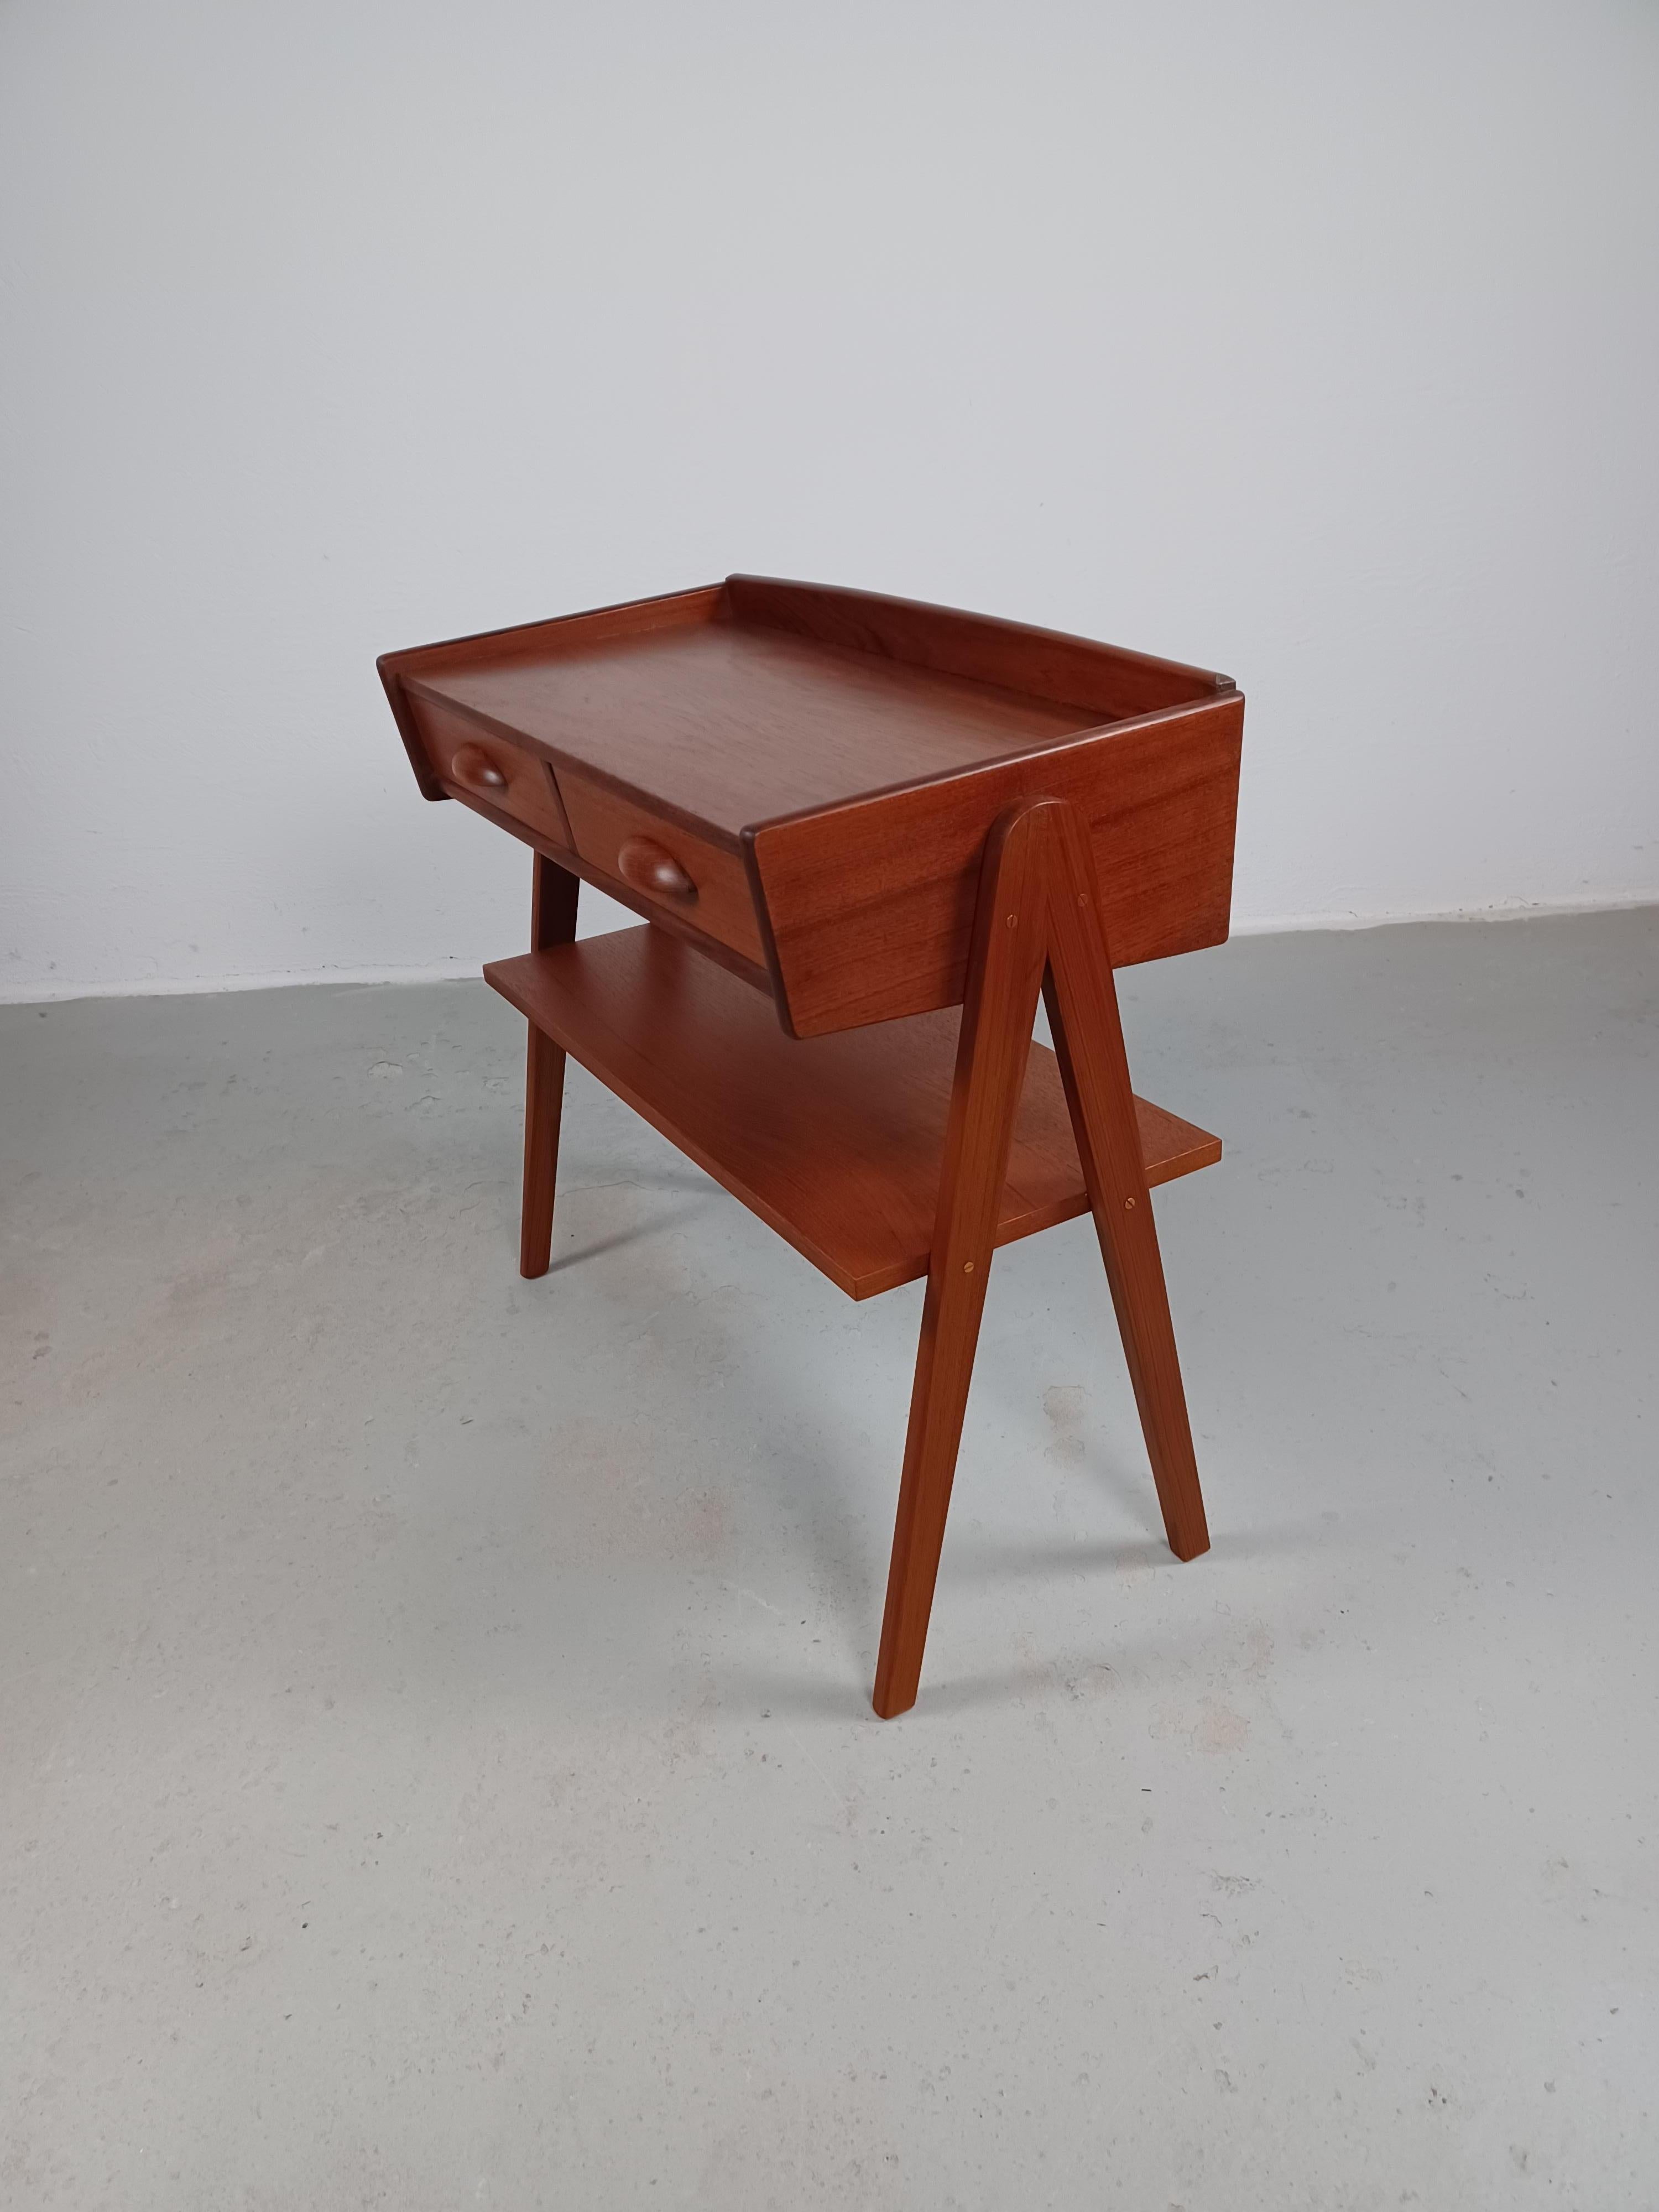 1950s Fully Restored Danish Søren Rasmussen Entry Table in Teak For Sale 7